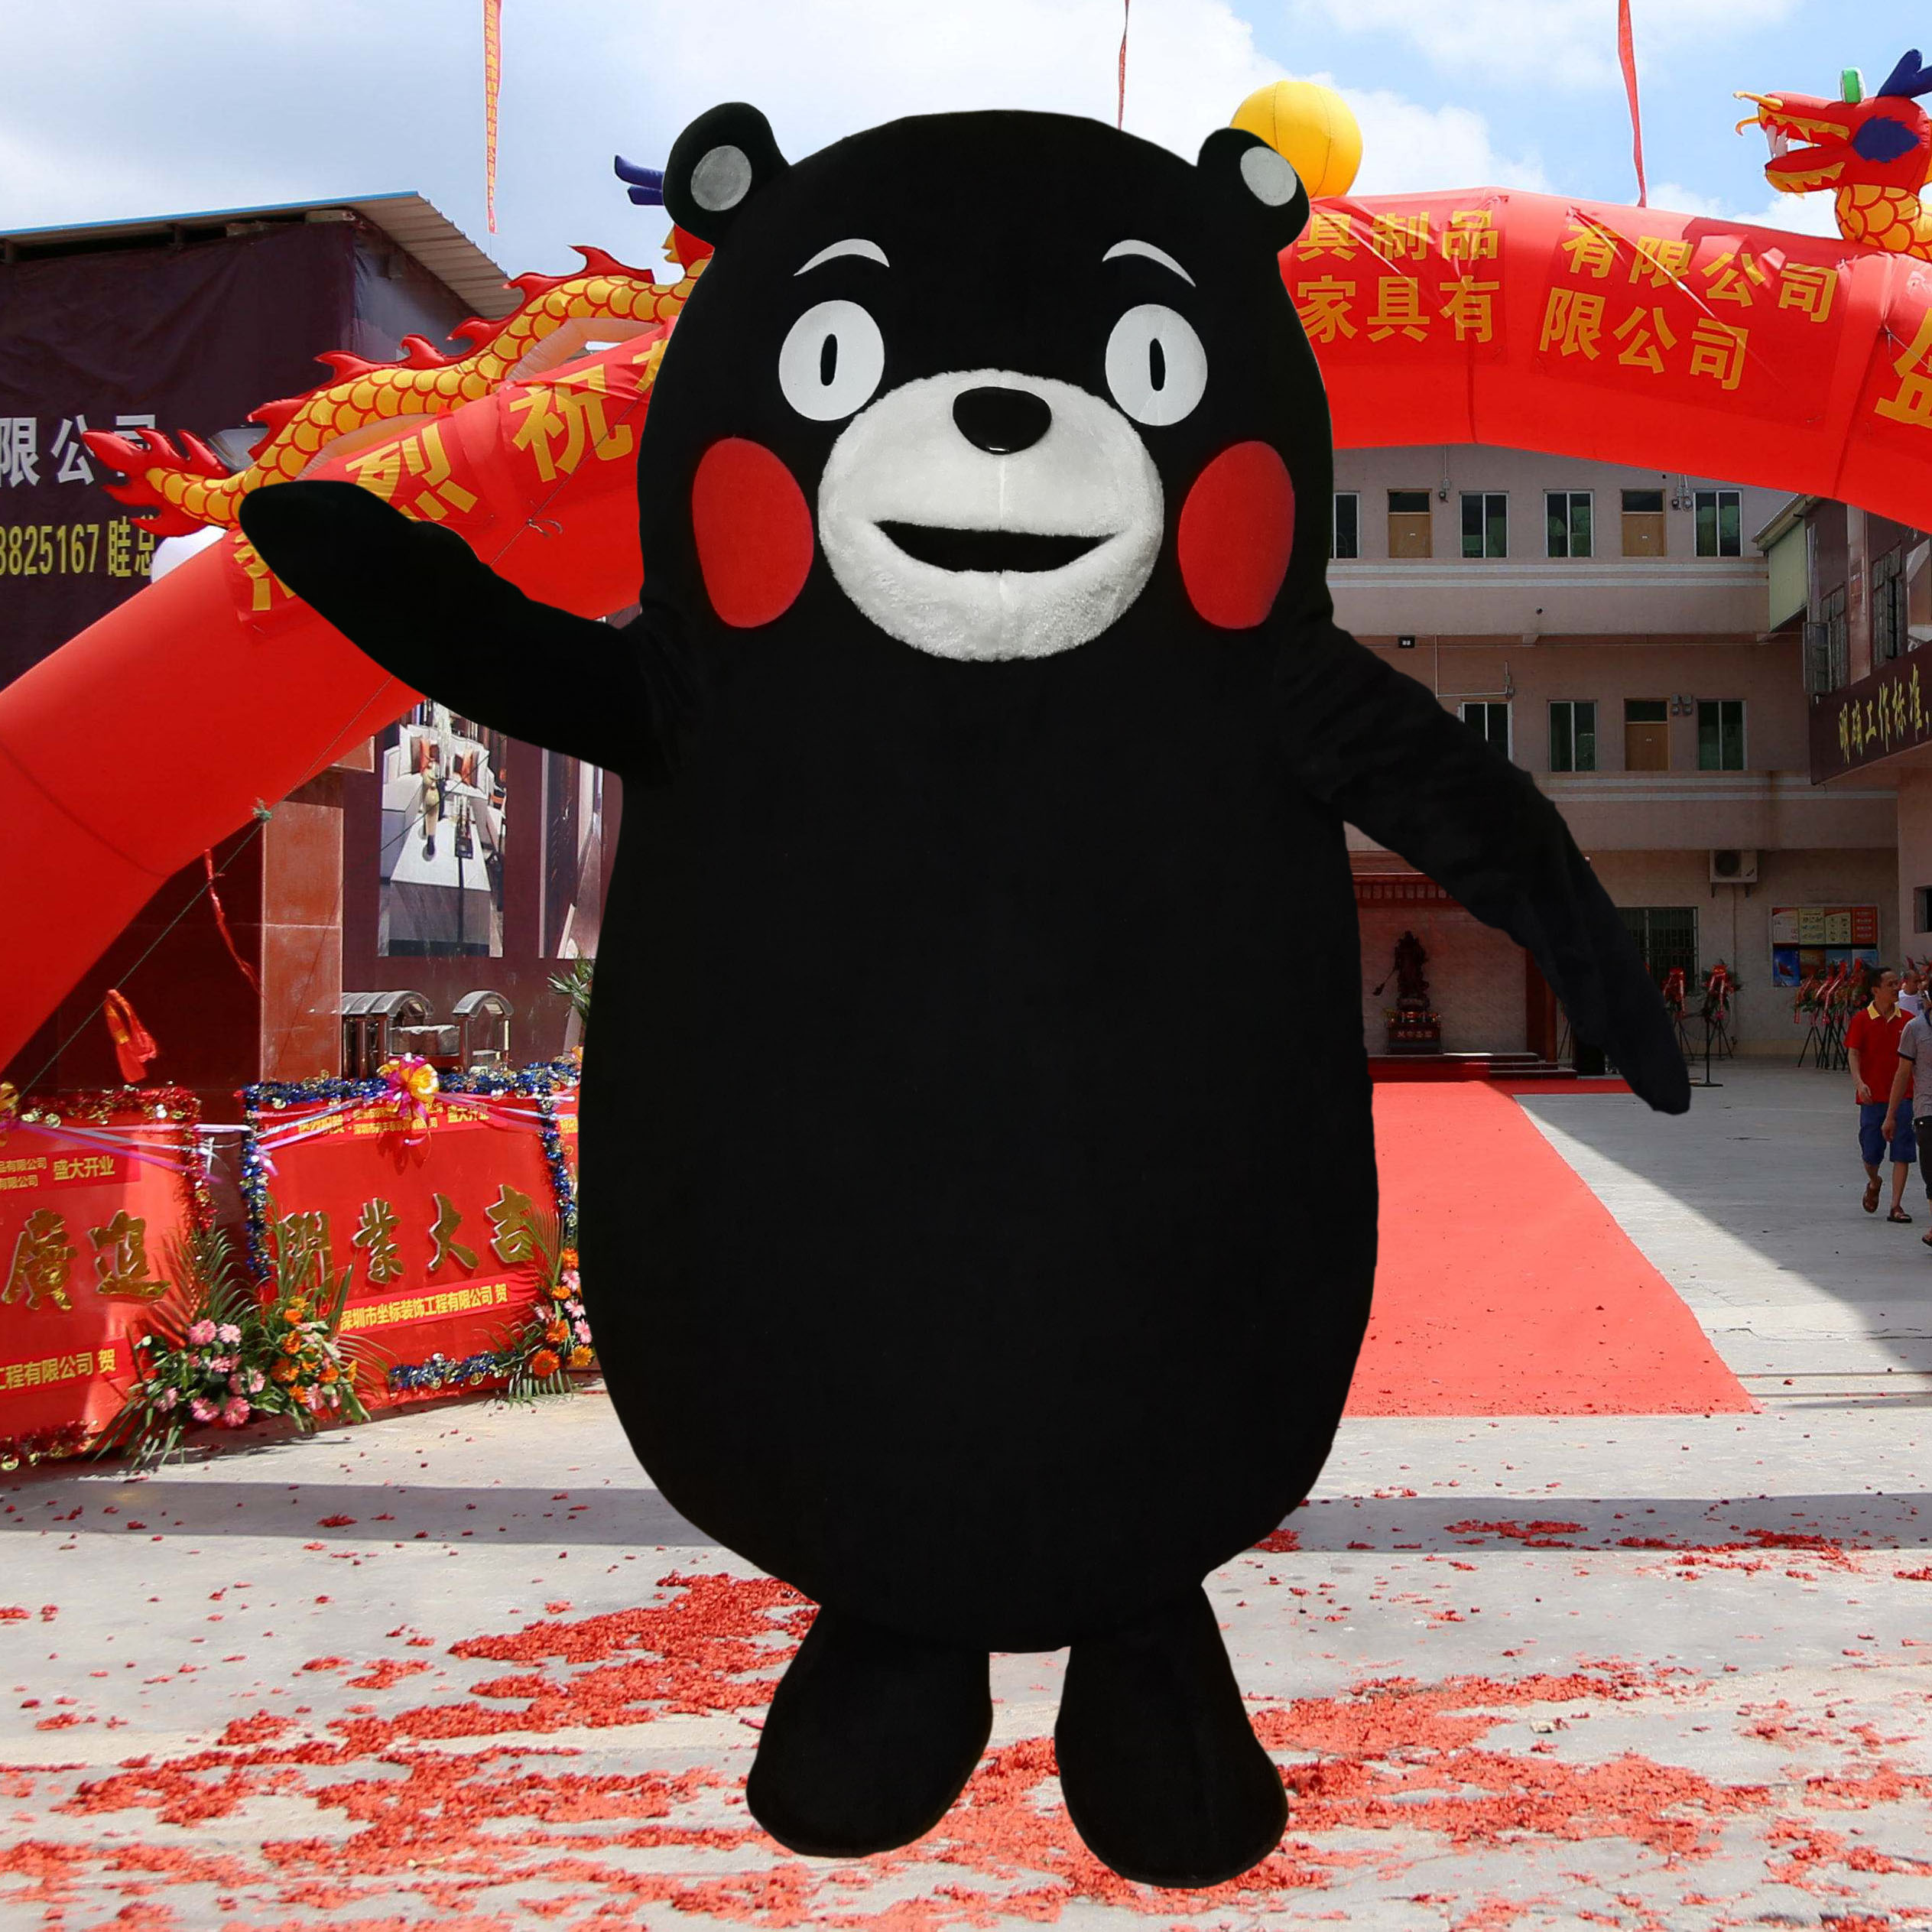 北京出租布朗熊网红熊本熊人偶服装可带人现场互动人偶扮演13671220967（微信同号）